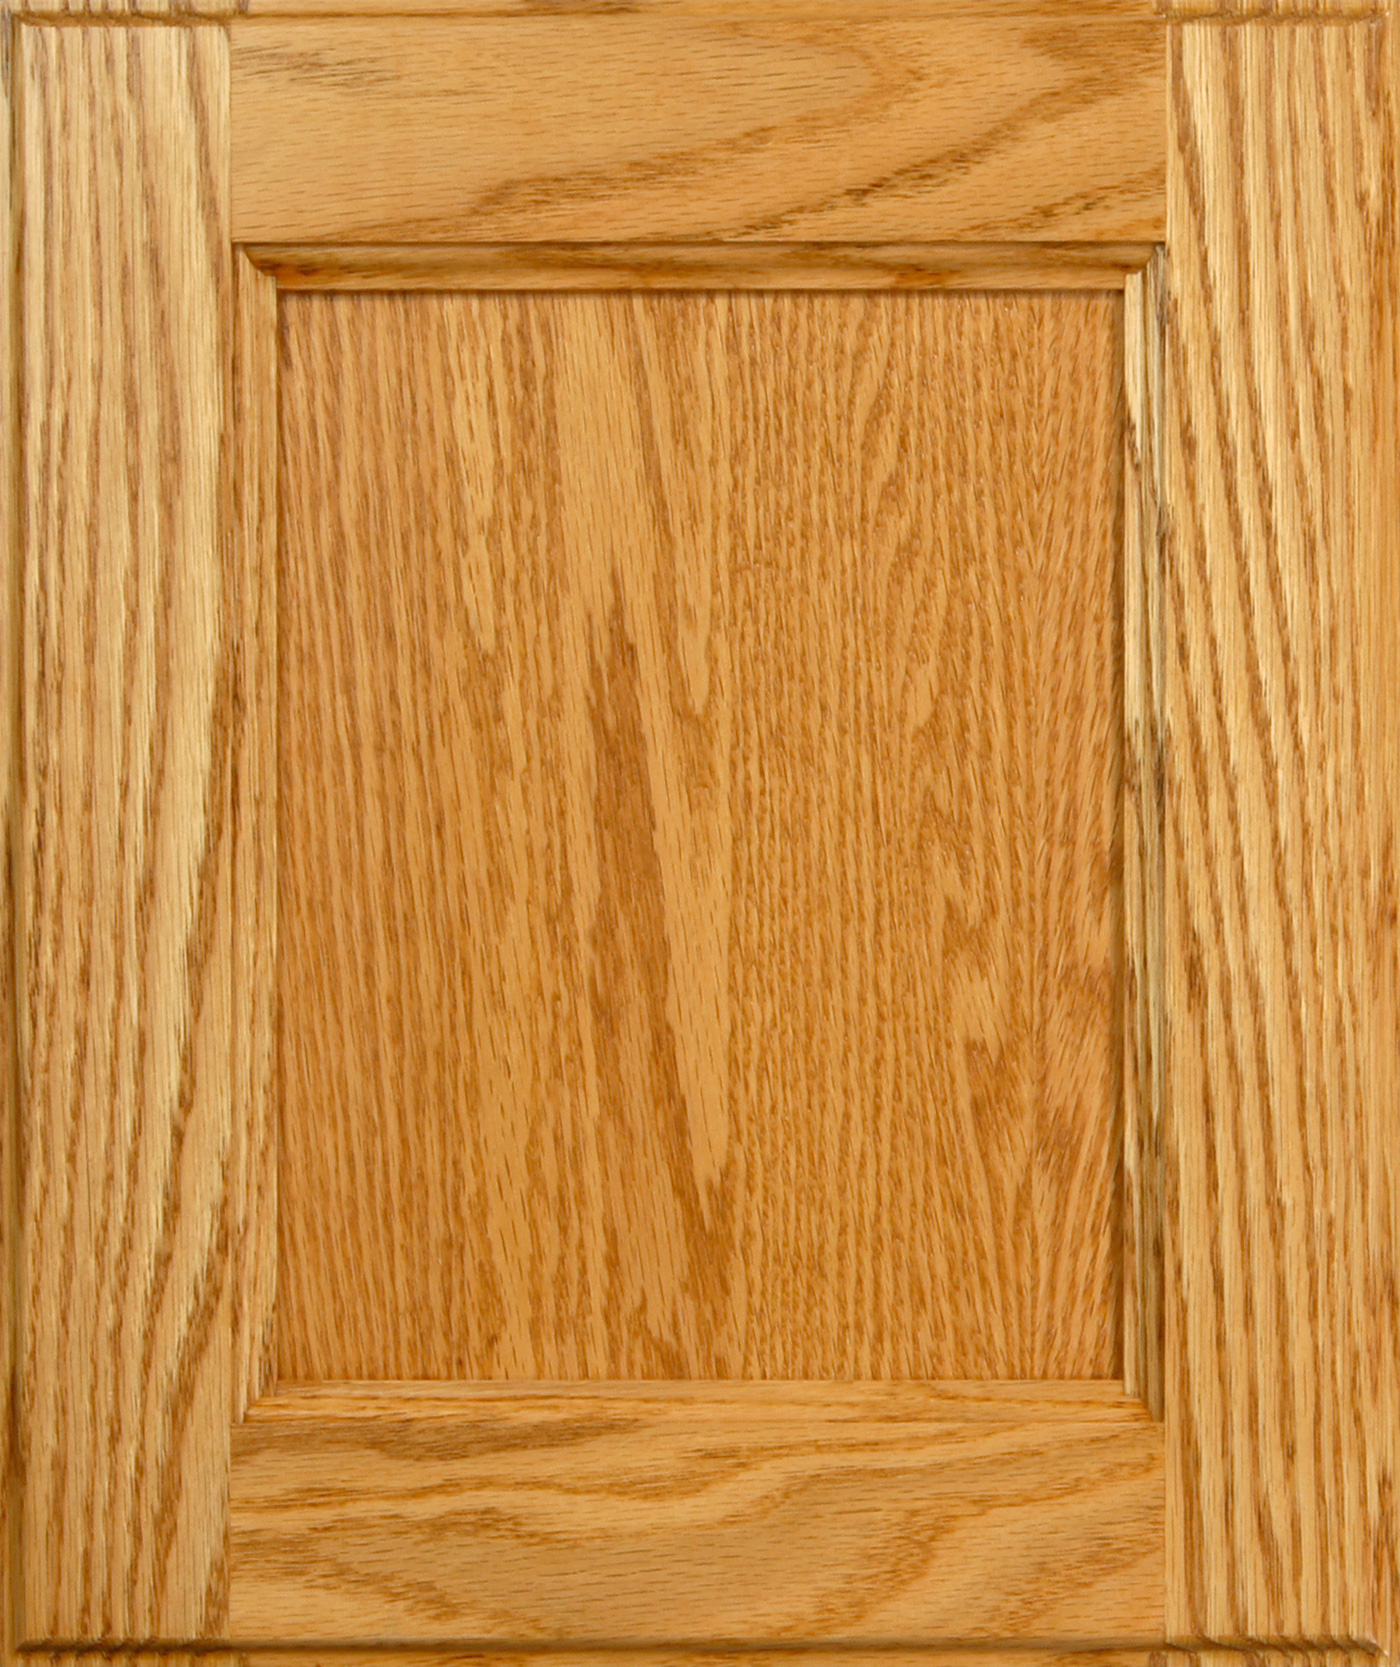 Red oak cabinet door